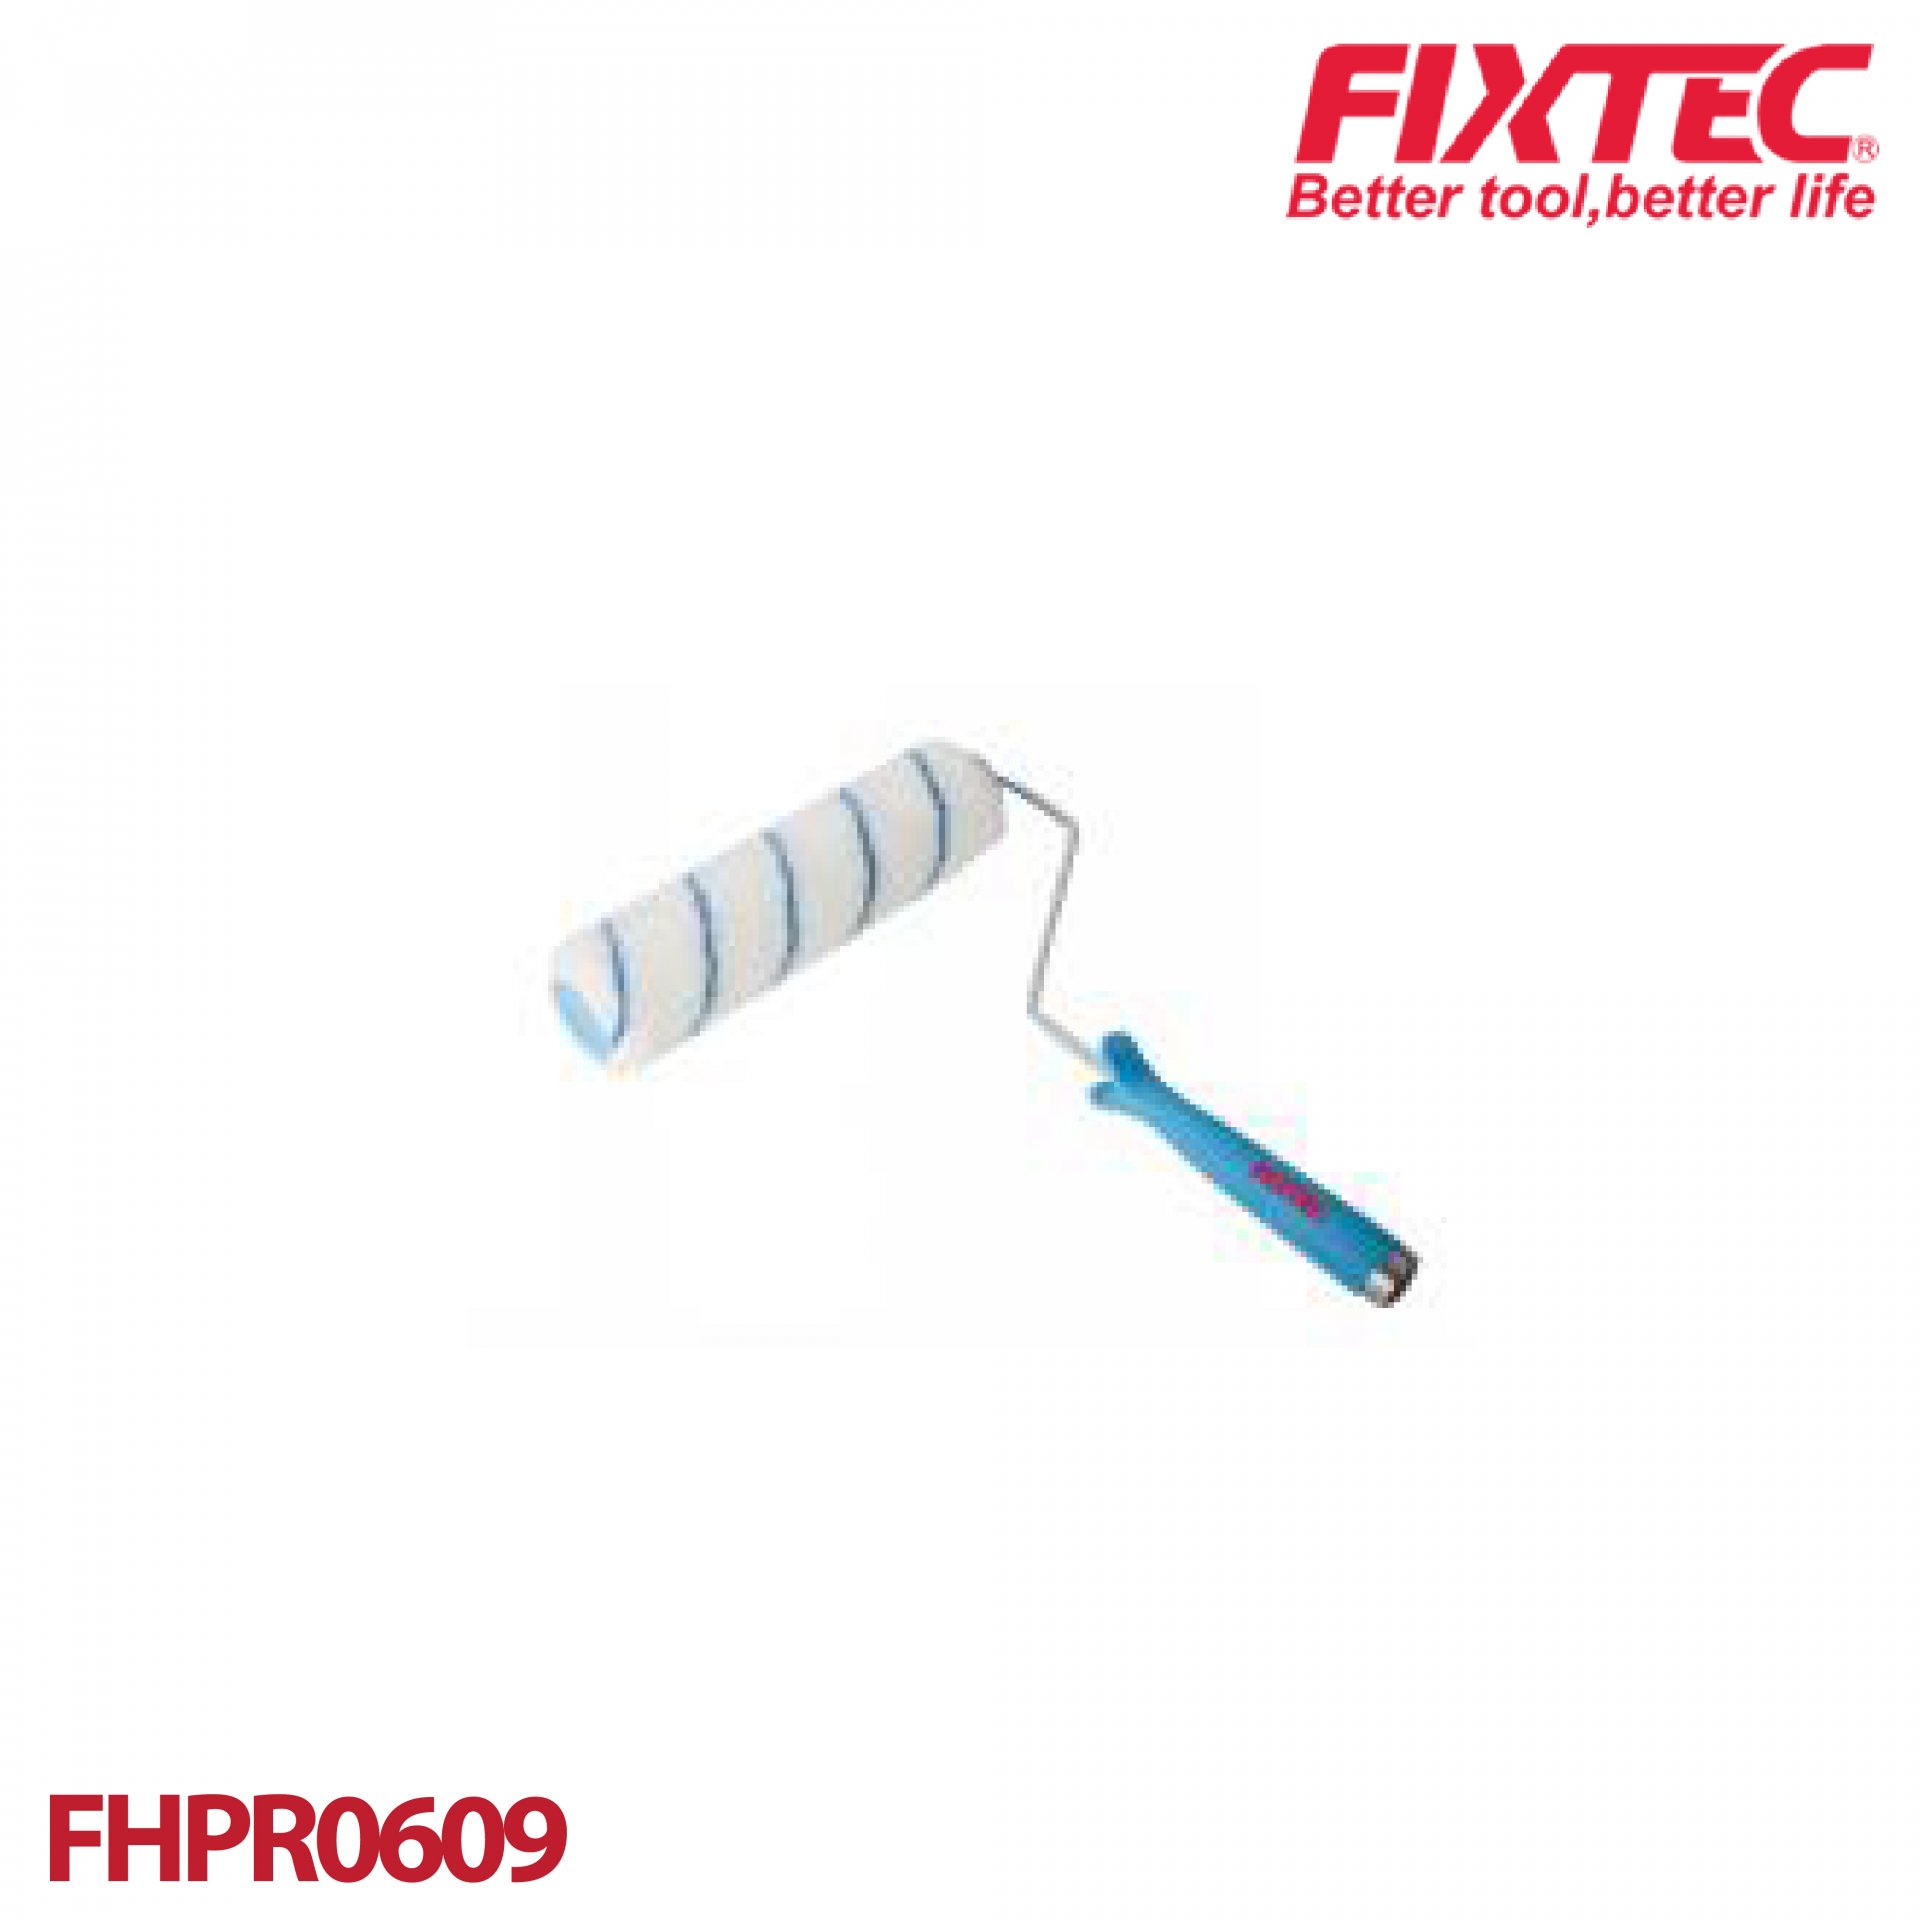 ลูกกลิ้งทาสี 9" FIXTEC FHPR0609